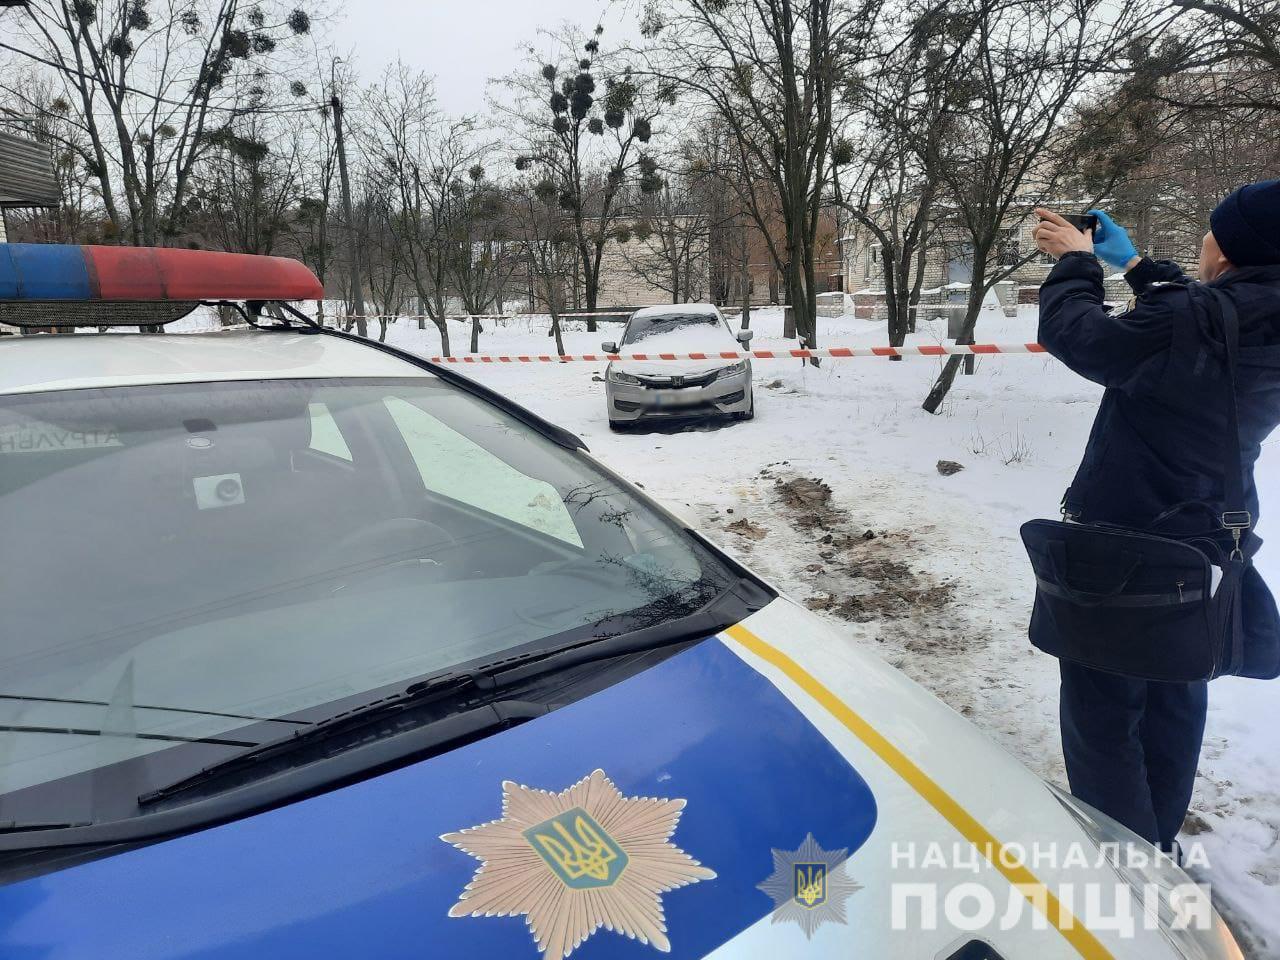 В Холодногорском районе найден труп в машине: полиция расследует убийство